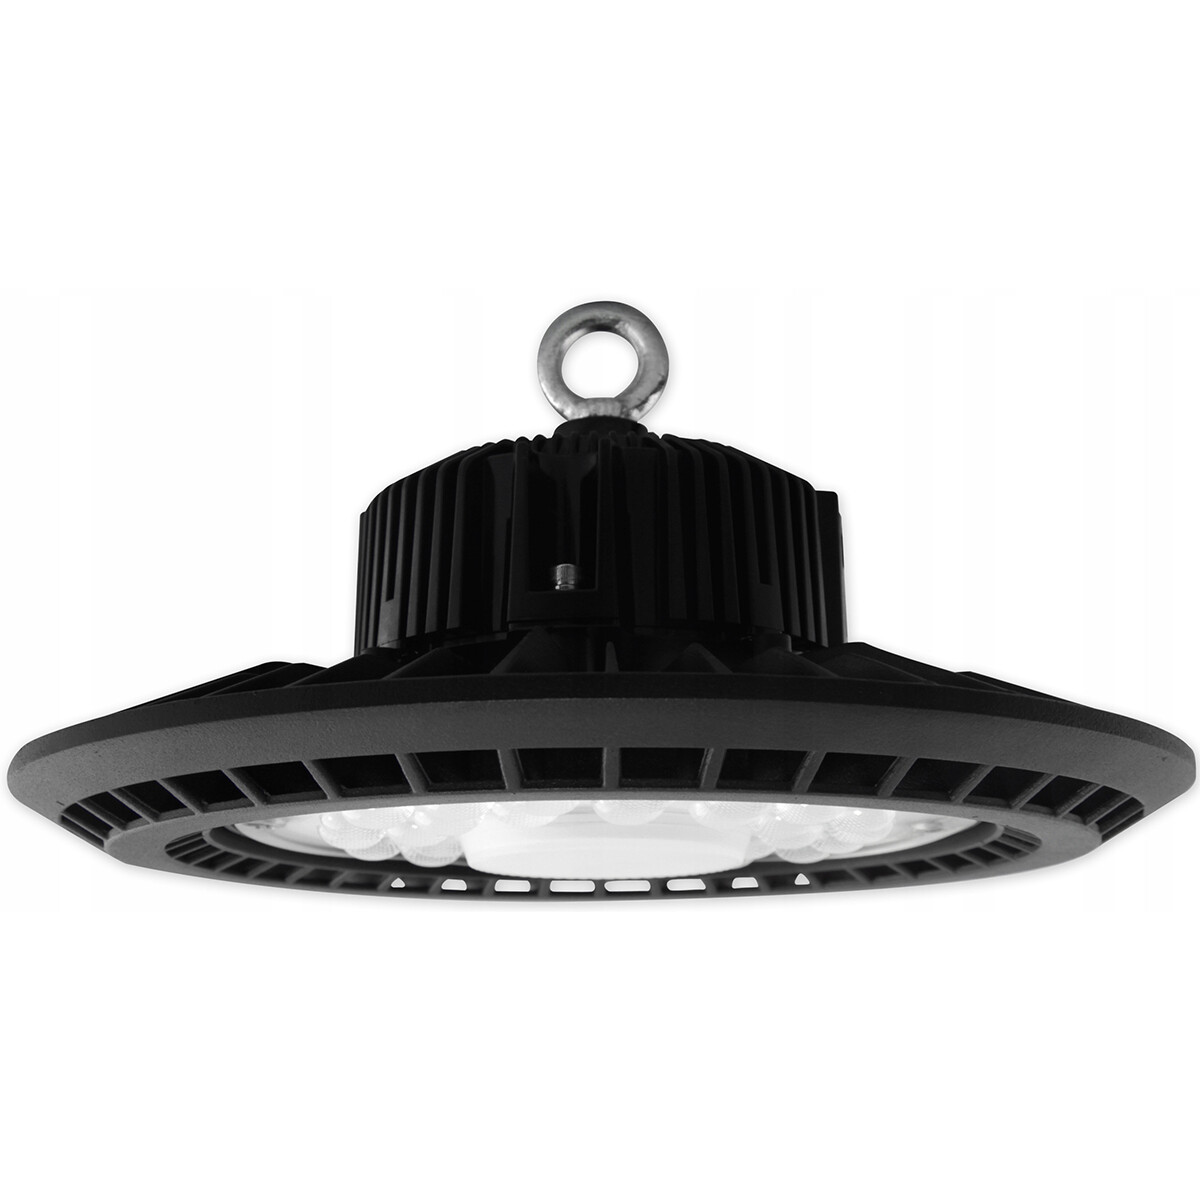 LED UFO High Bay 200 Watt - Prixa Aspy - Magazijnverlichting - Dimbaar - Waterdicht IP65 - Helder/Koud Wit 5000K - Aluminium product afbeelding